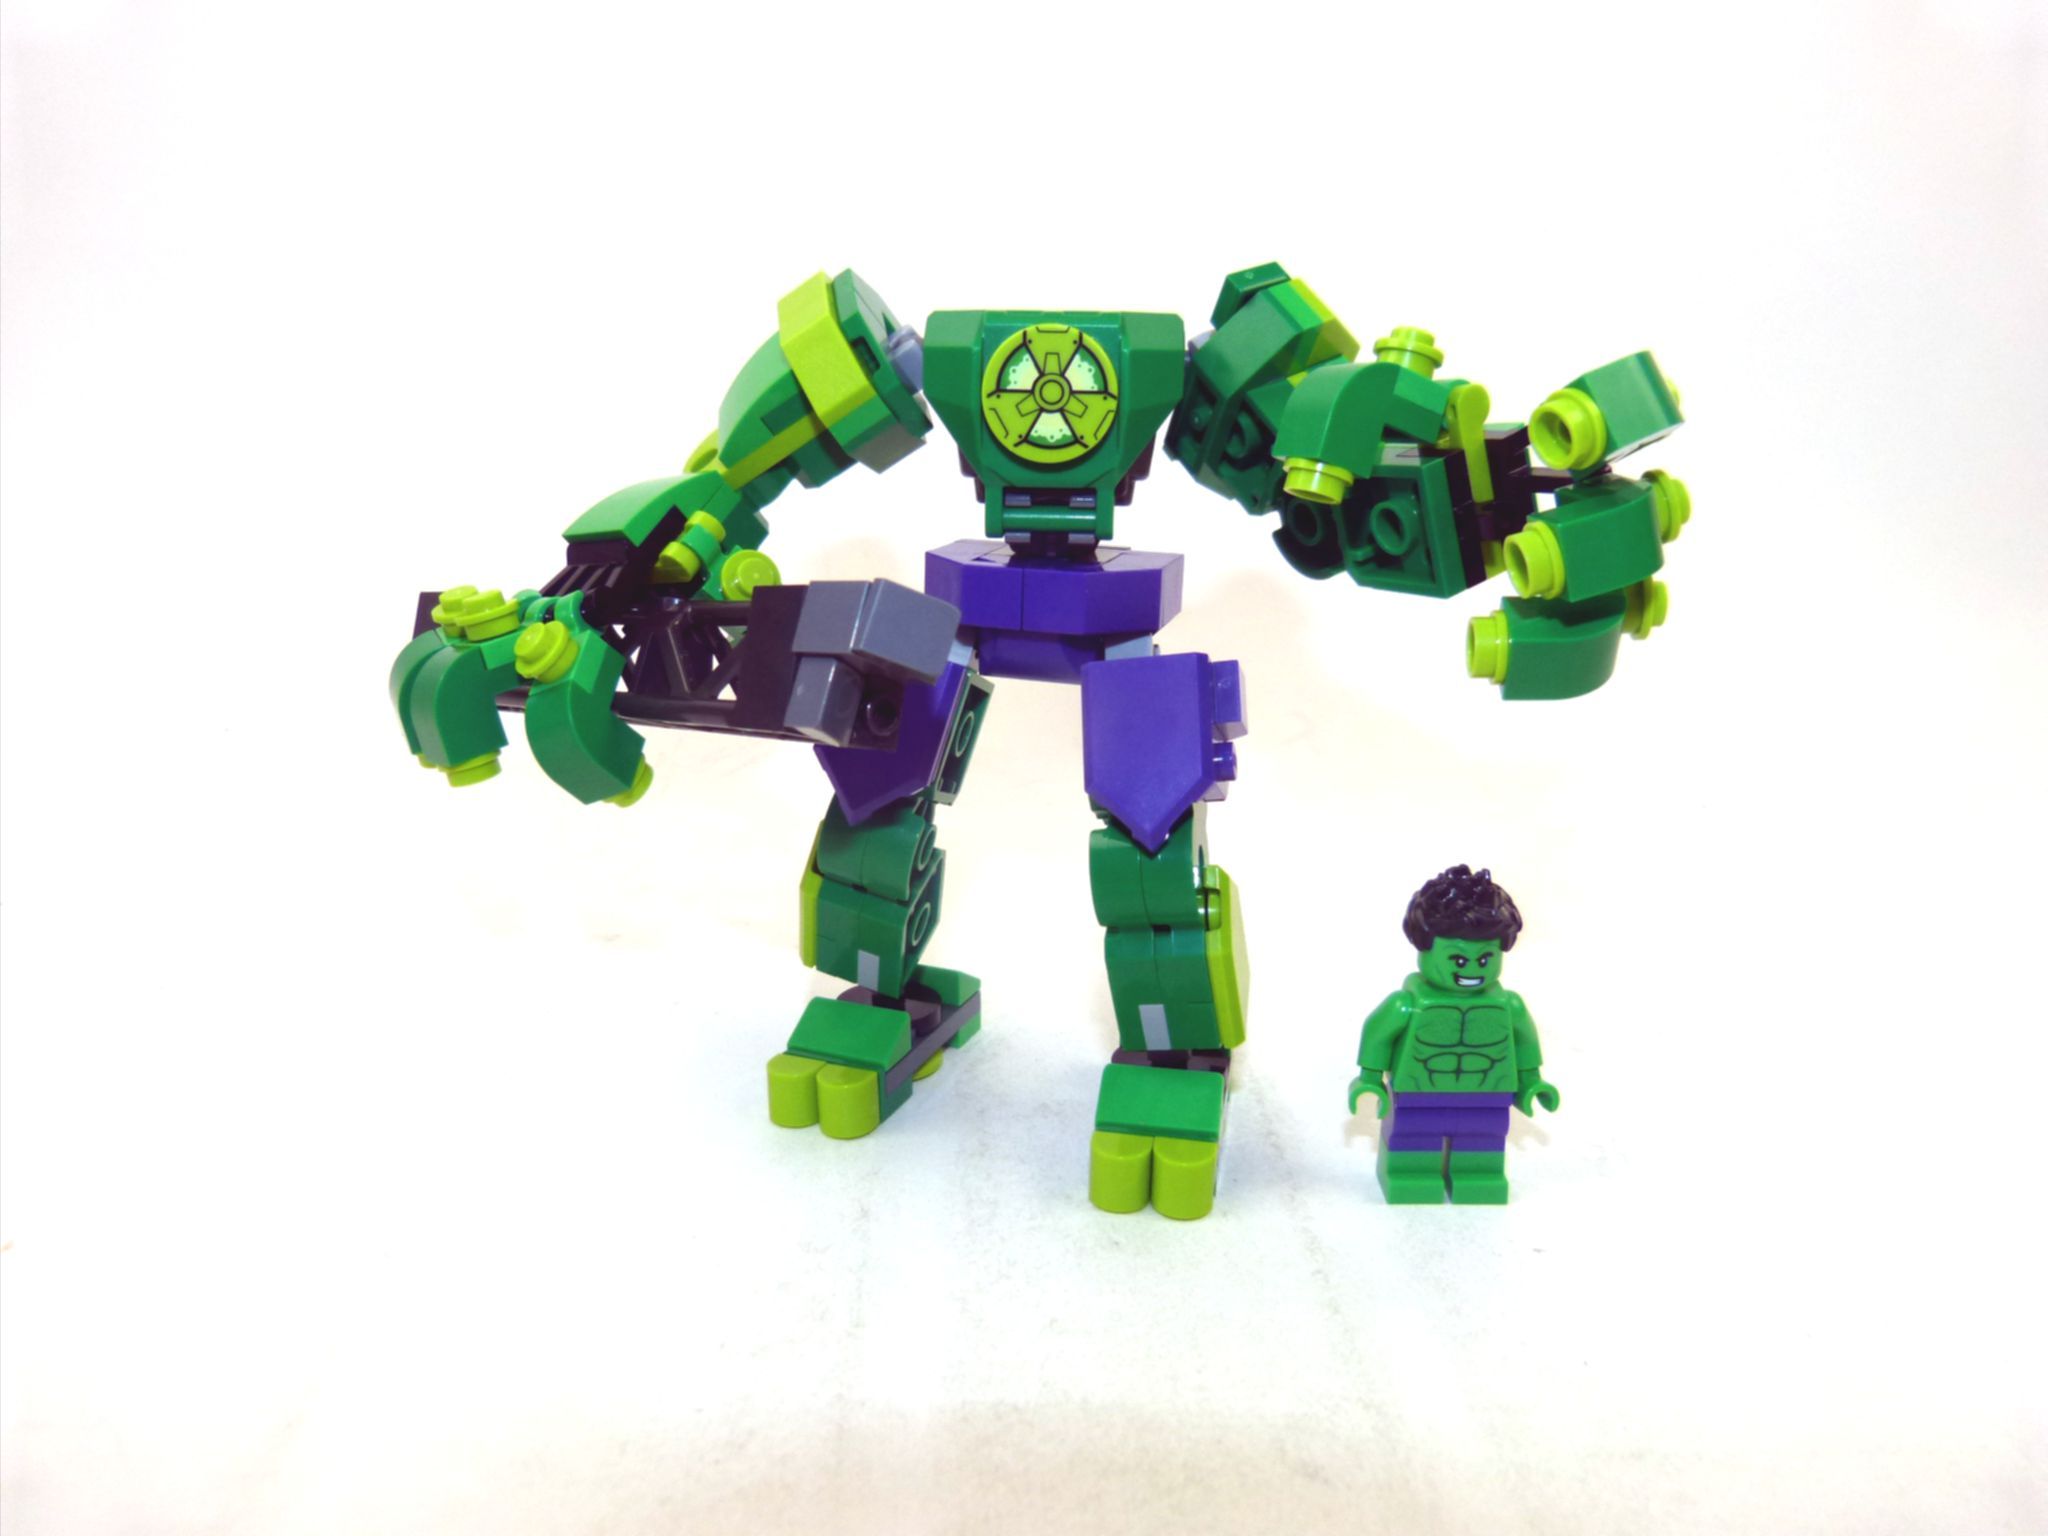 Hulk Mech Armor